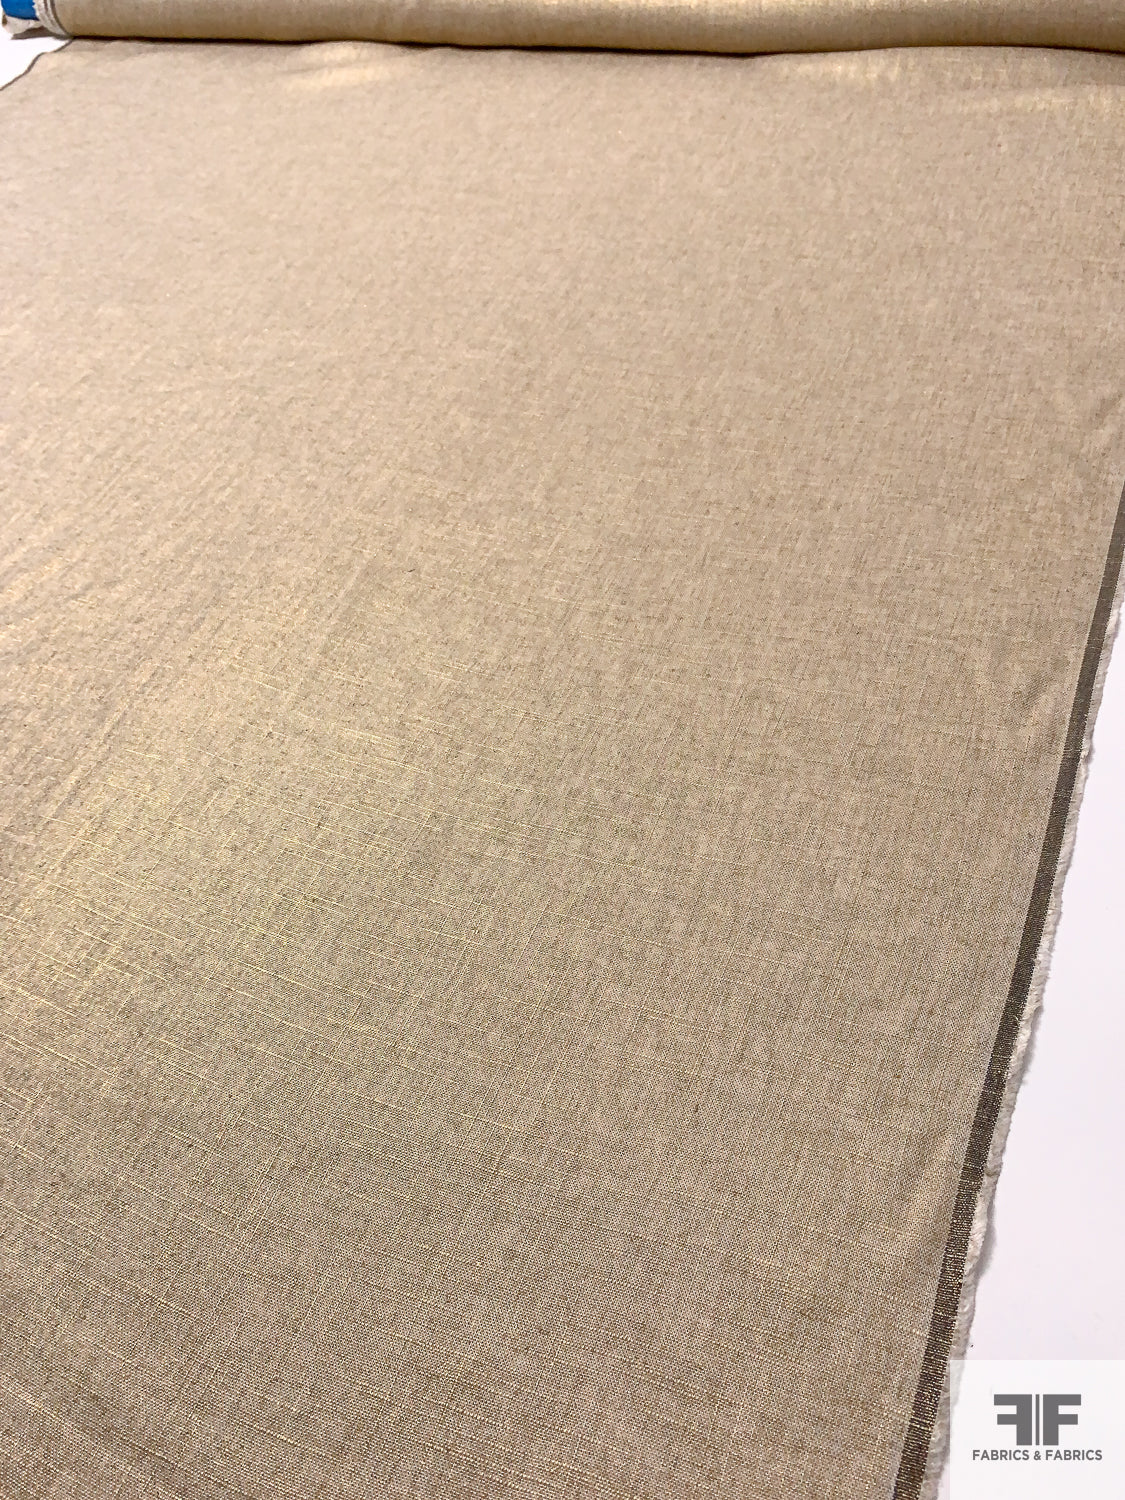 Foil Printed Linen - Gold / Beige